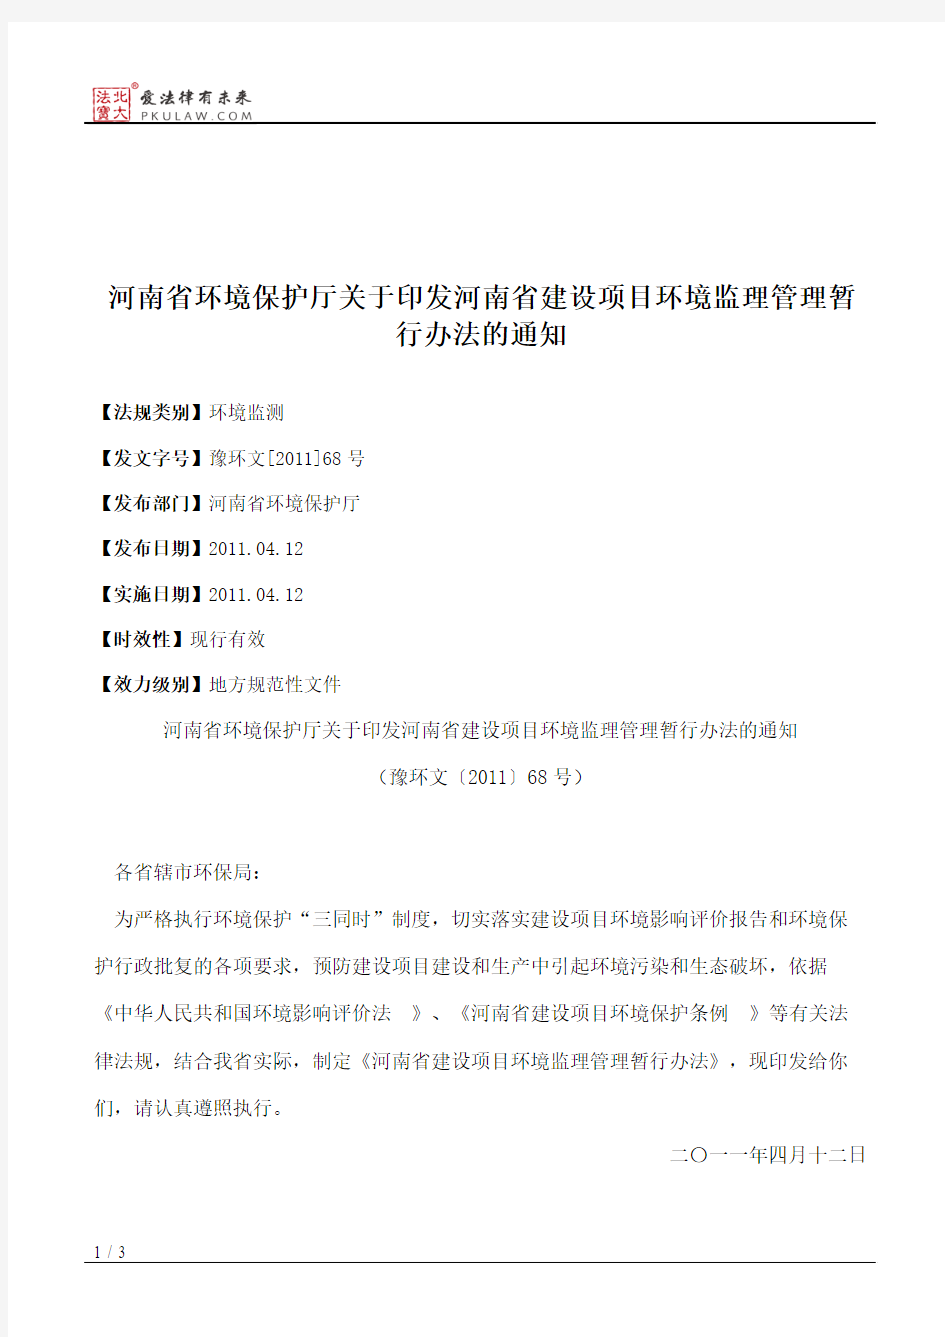 河南省环境保护厅关于印发河南省建设项目环境监理管理暂行办法的通知